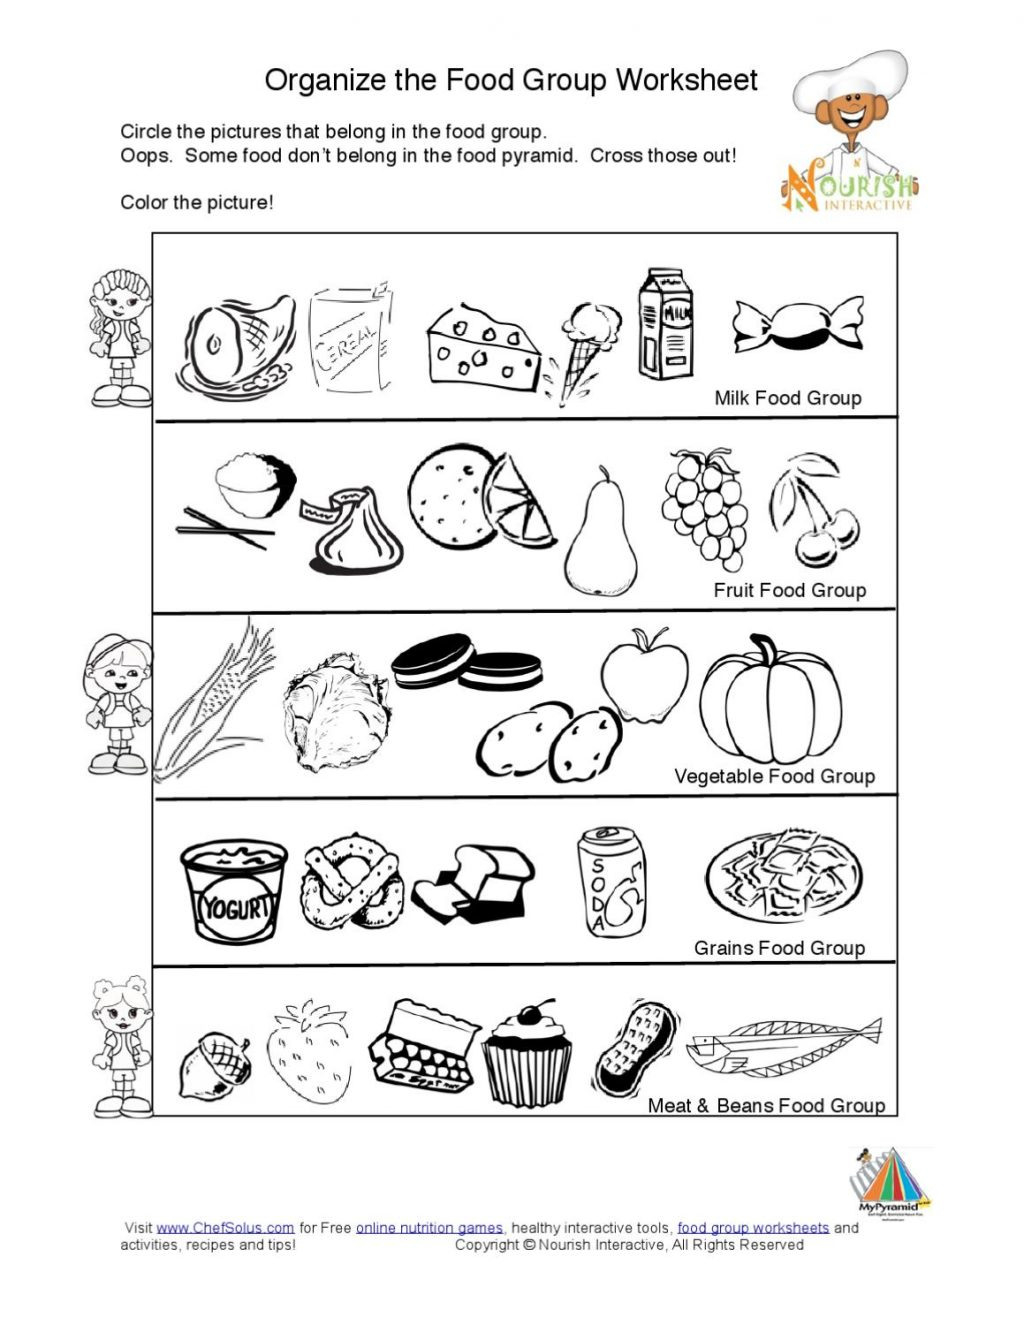 nutrition-worksheets-for-kids-db-excel